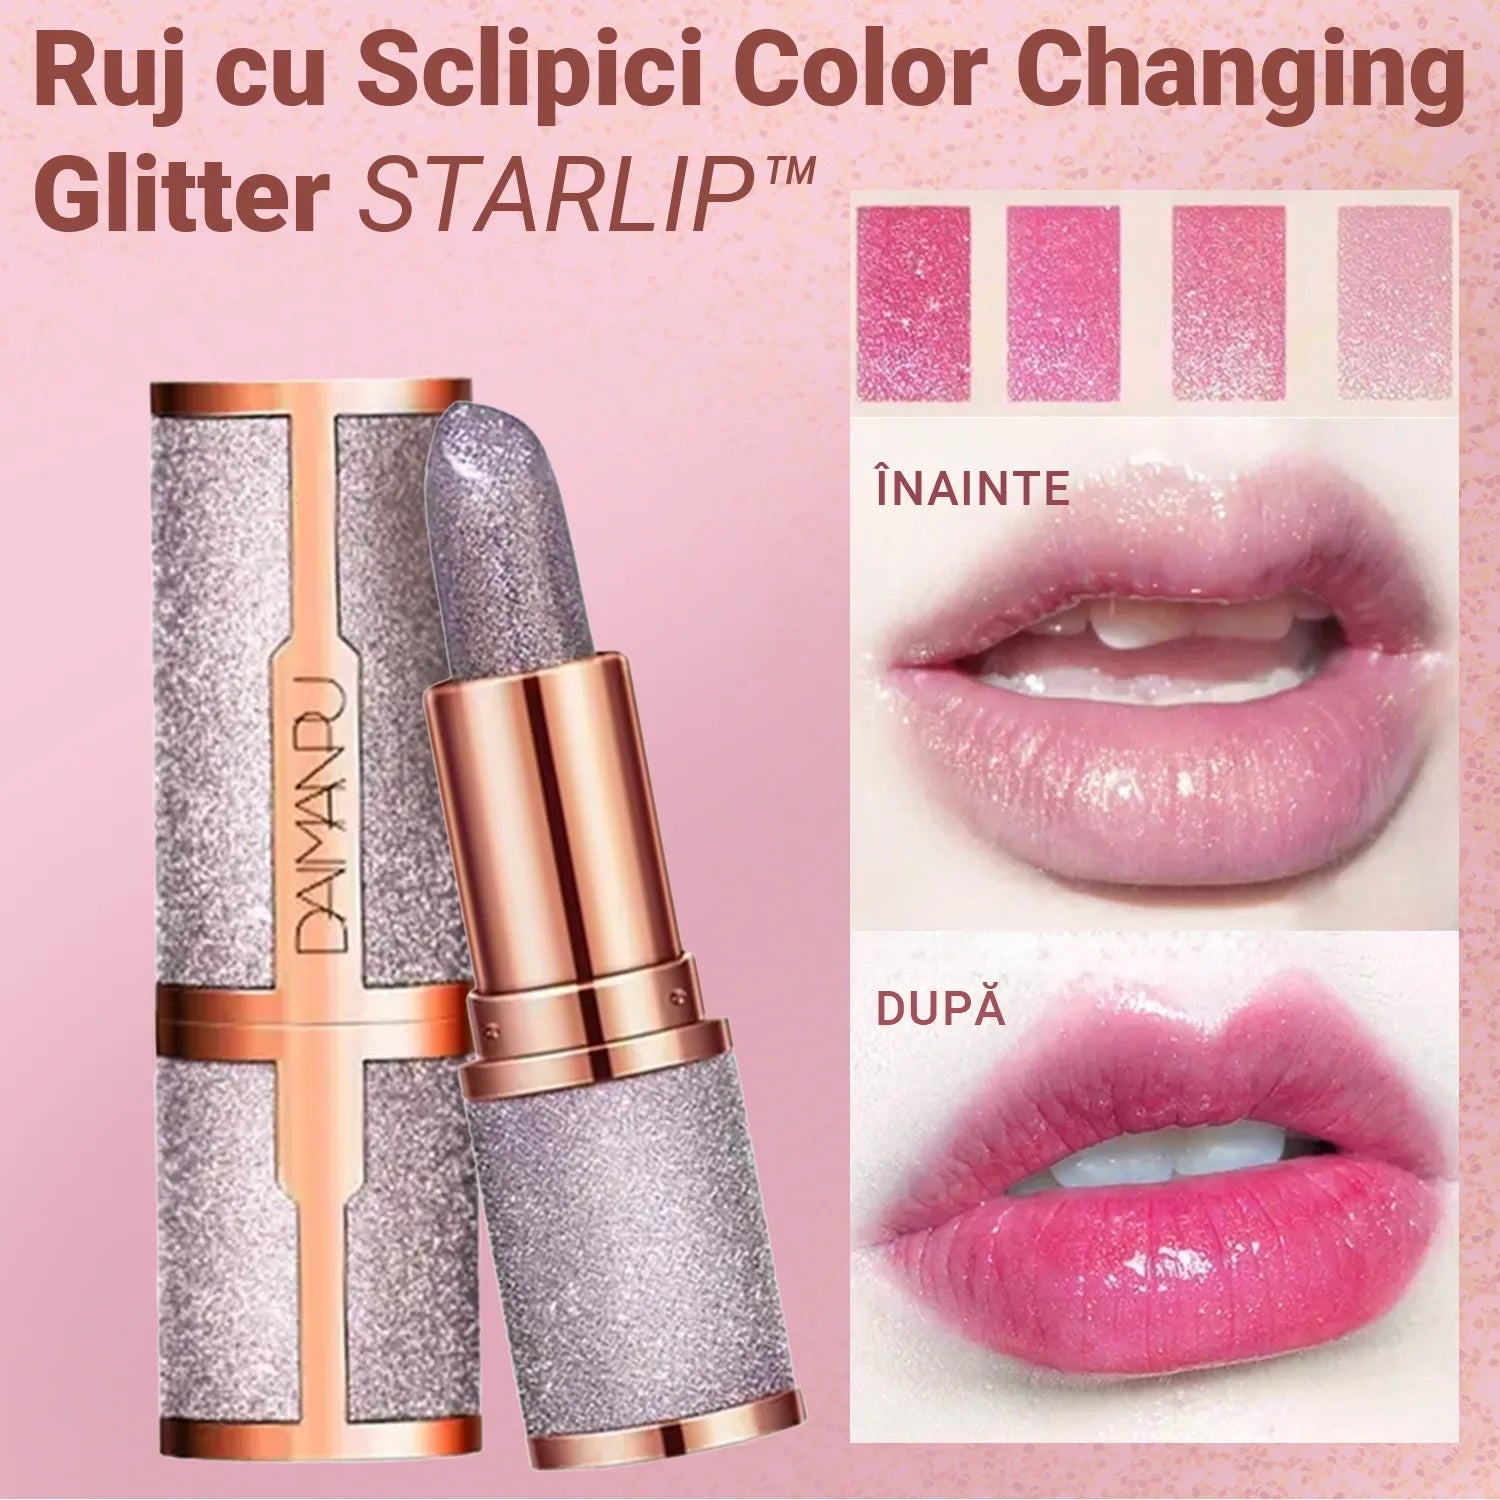 Ruj cu Sclipici Color Changing Glitter STARLIP™